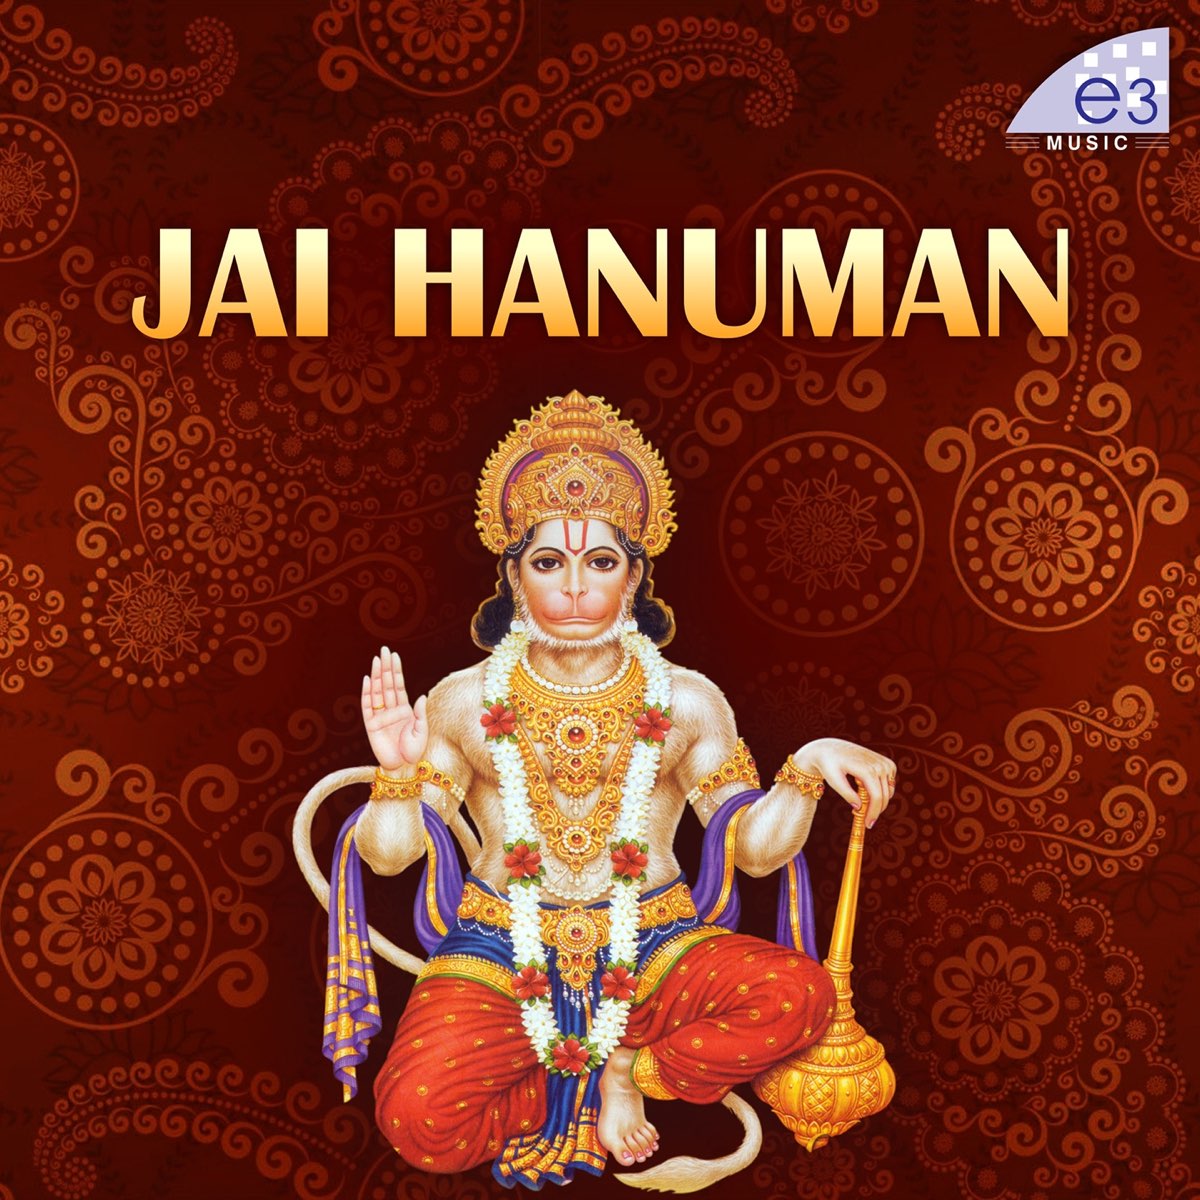 Jai Hanuman by Ramu, Suresh & Sridevi on Apple Music